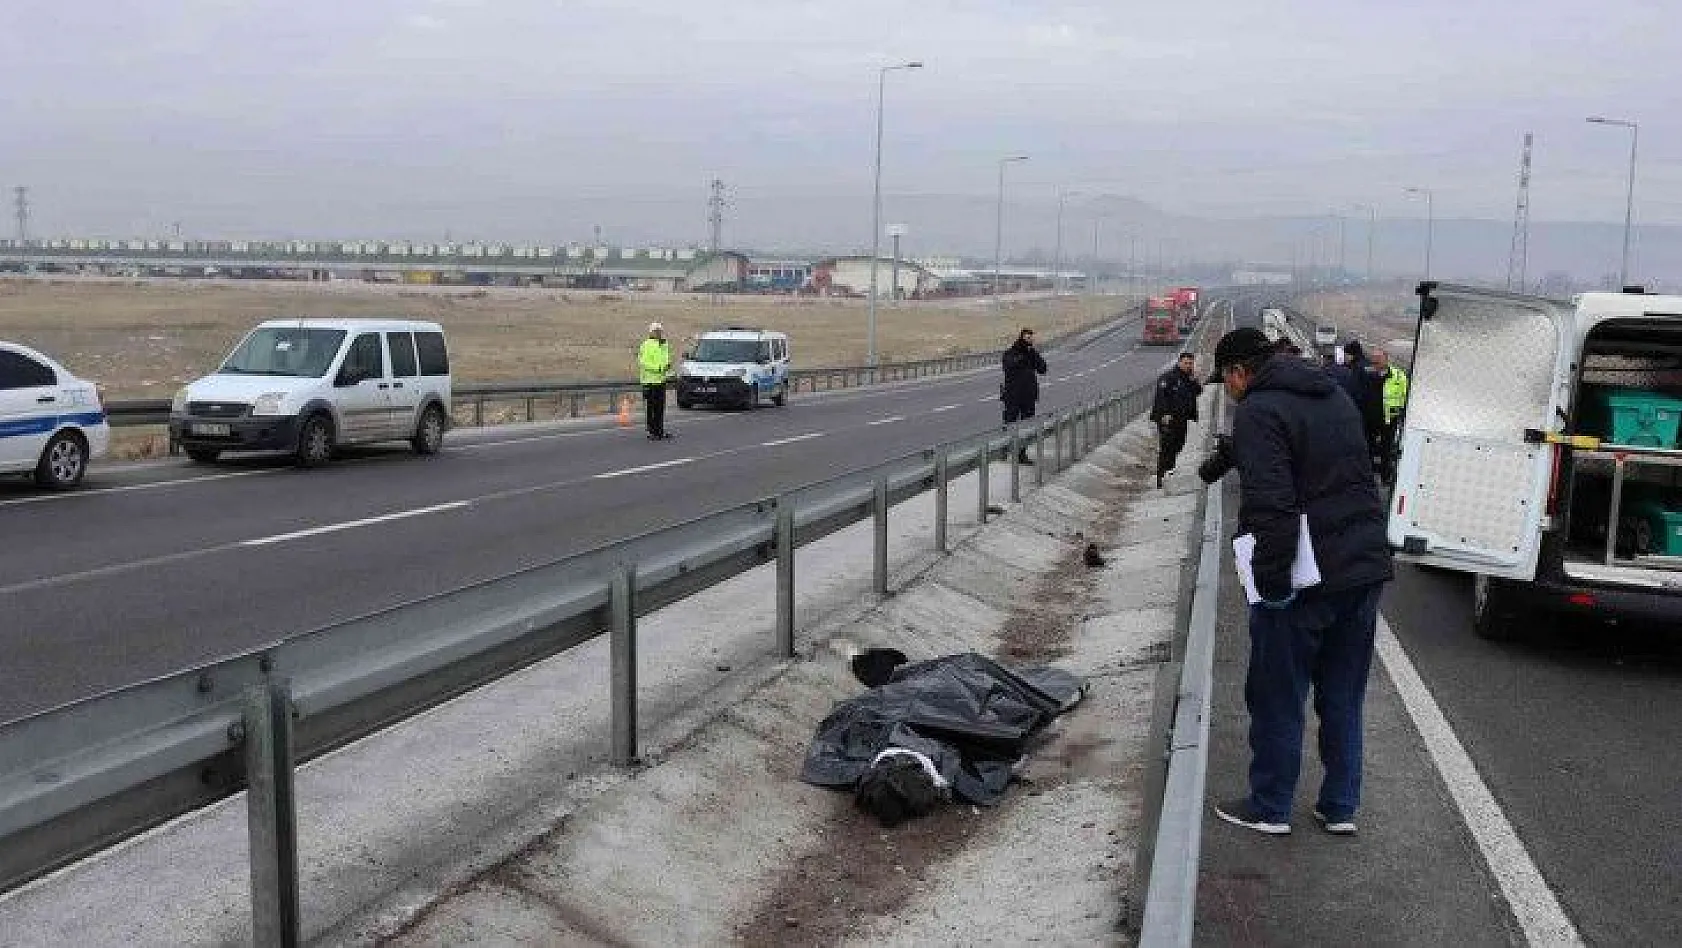 Kayseri'de üst üste feci kaza:1 ölü, 1 ağır yaralı